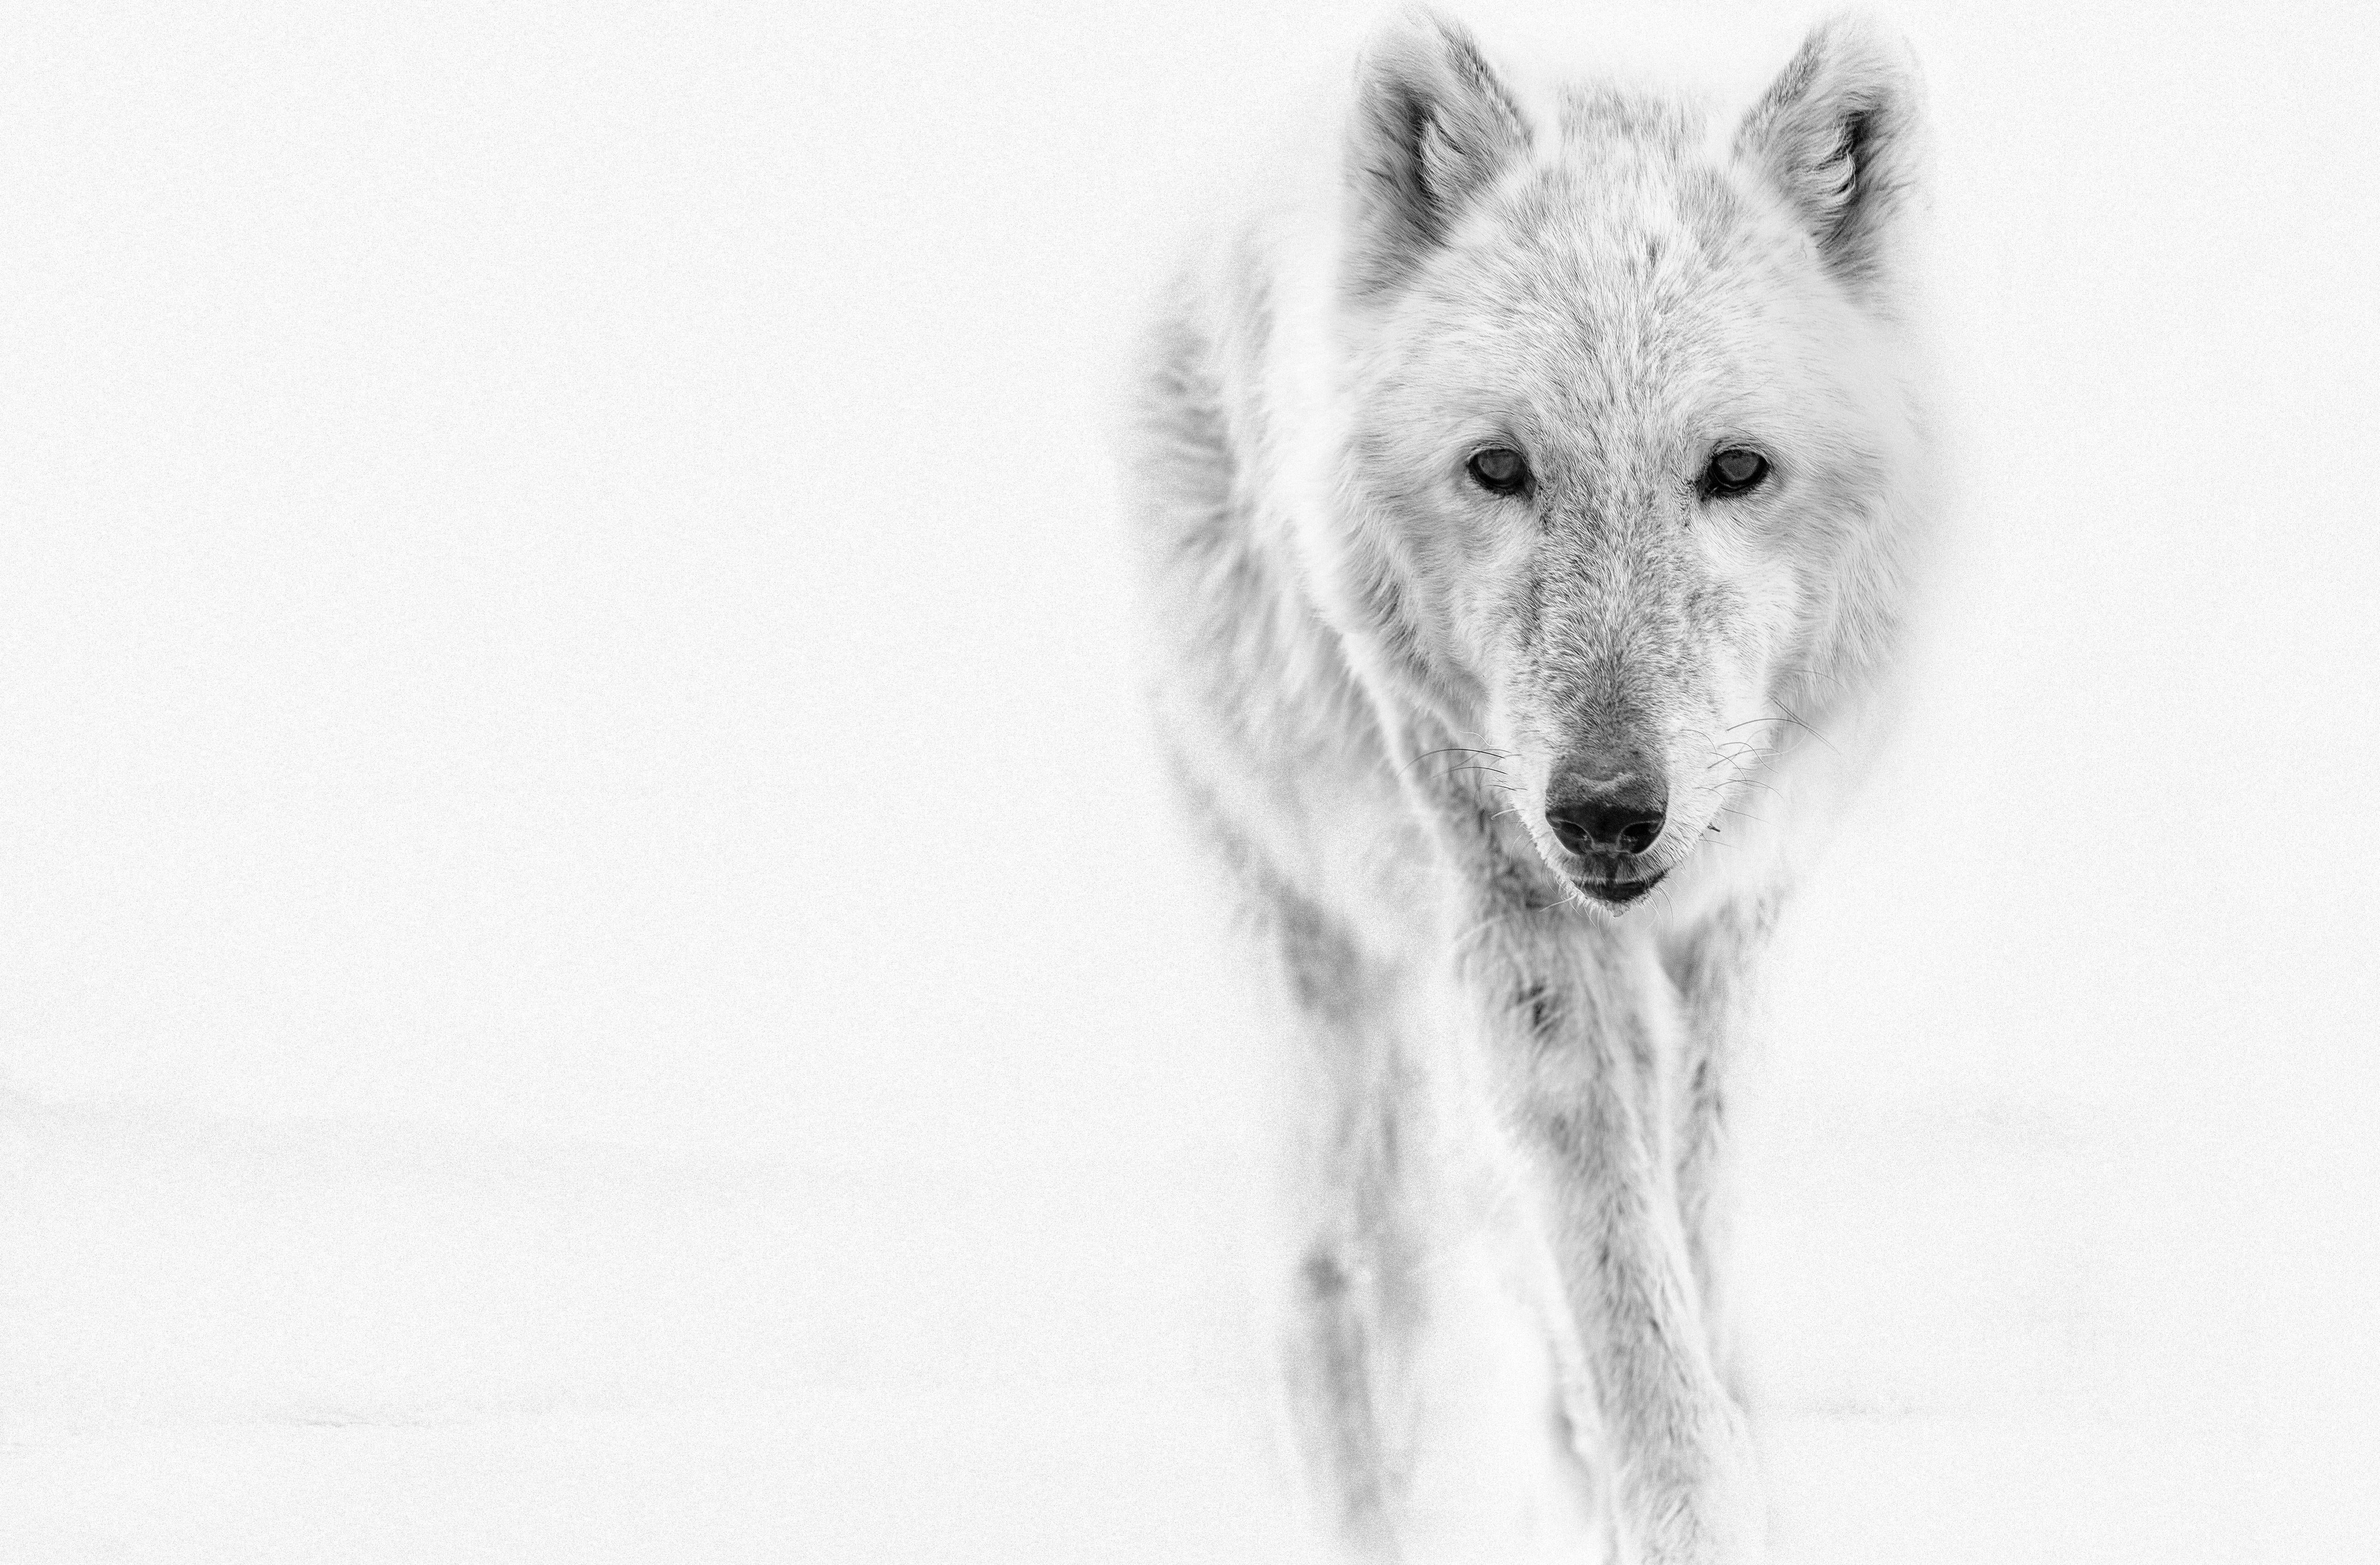 Shane Russeck Black and White Photograph – Arctic Wolf 36x48 Fotografie Schwarz-Weiß-Fotografie, Wolken-Kunstdruck